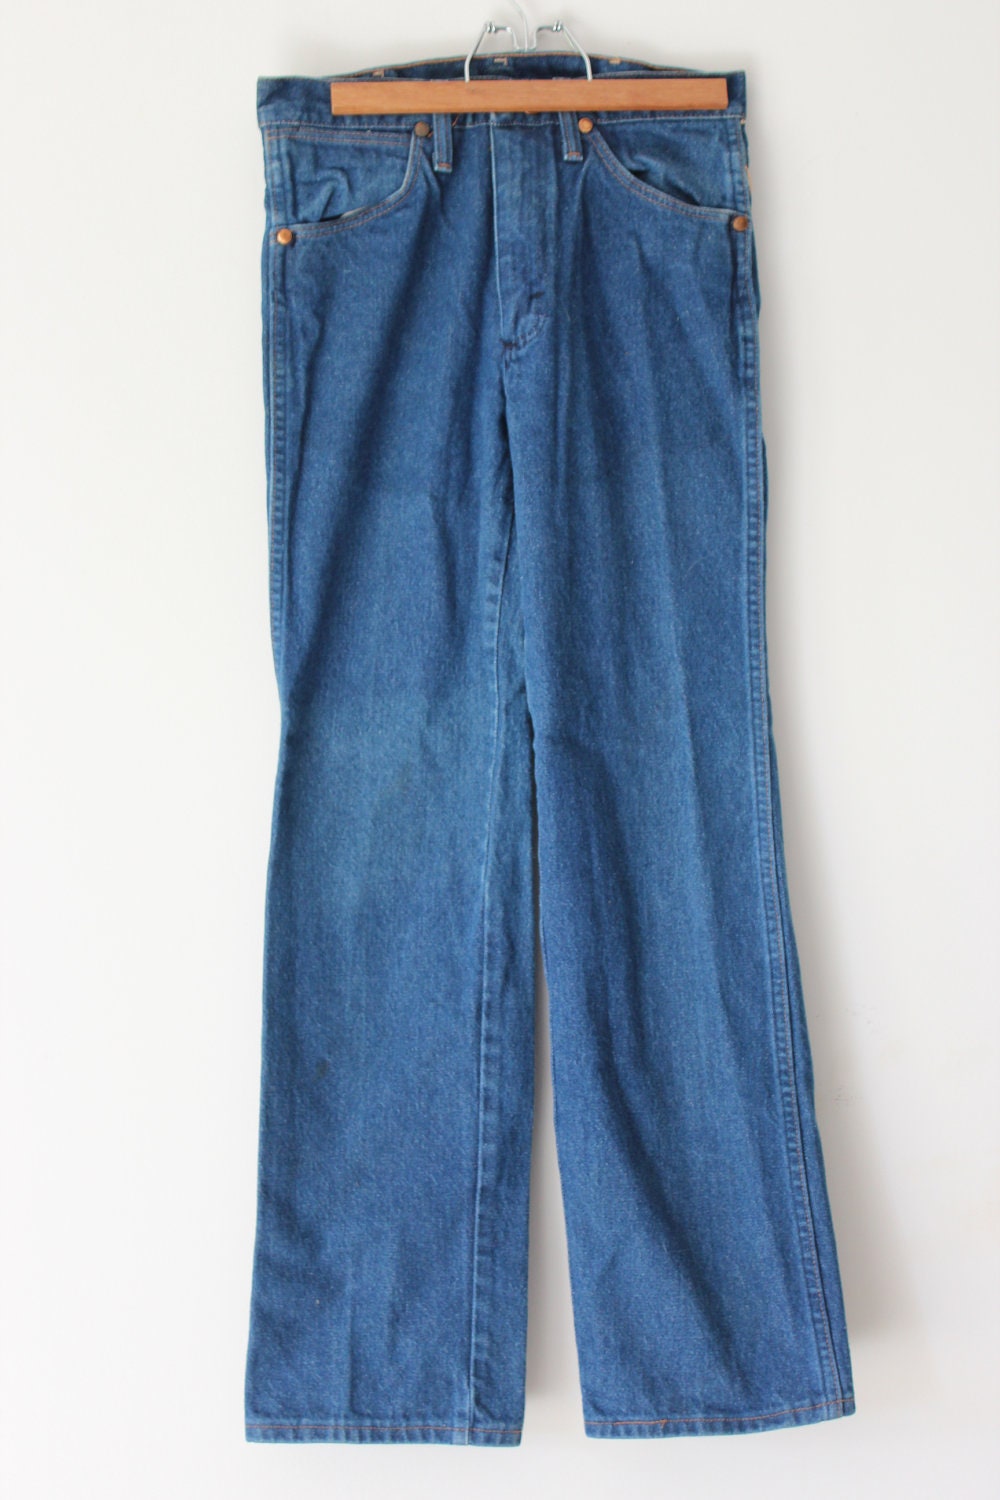 RESERVED for Israel Vintage Wrangler Jeans Copper Rivets